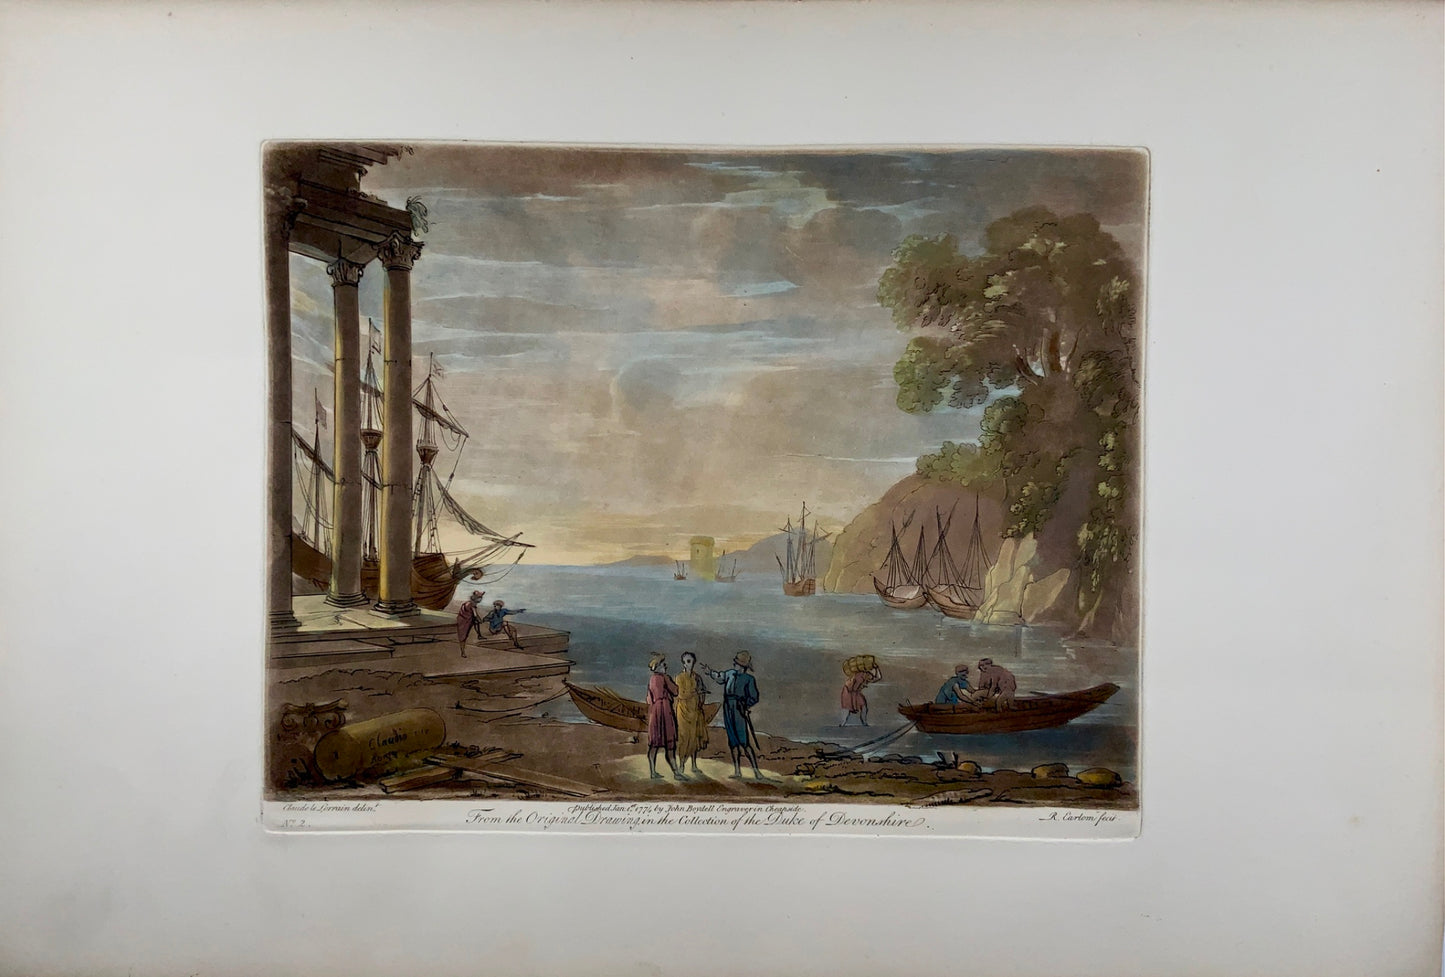 1774 Richard Earlom d'après CLAUDE LORRAIN - Vue du port en Italie - Grand papier - Topographie, Gravure de Maître